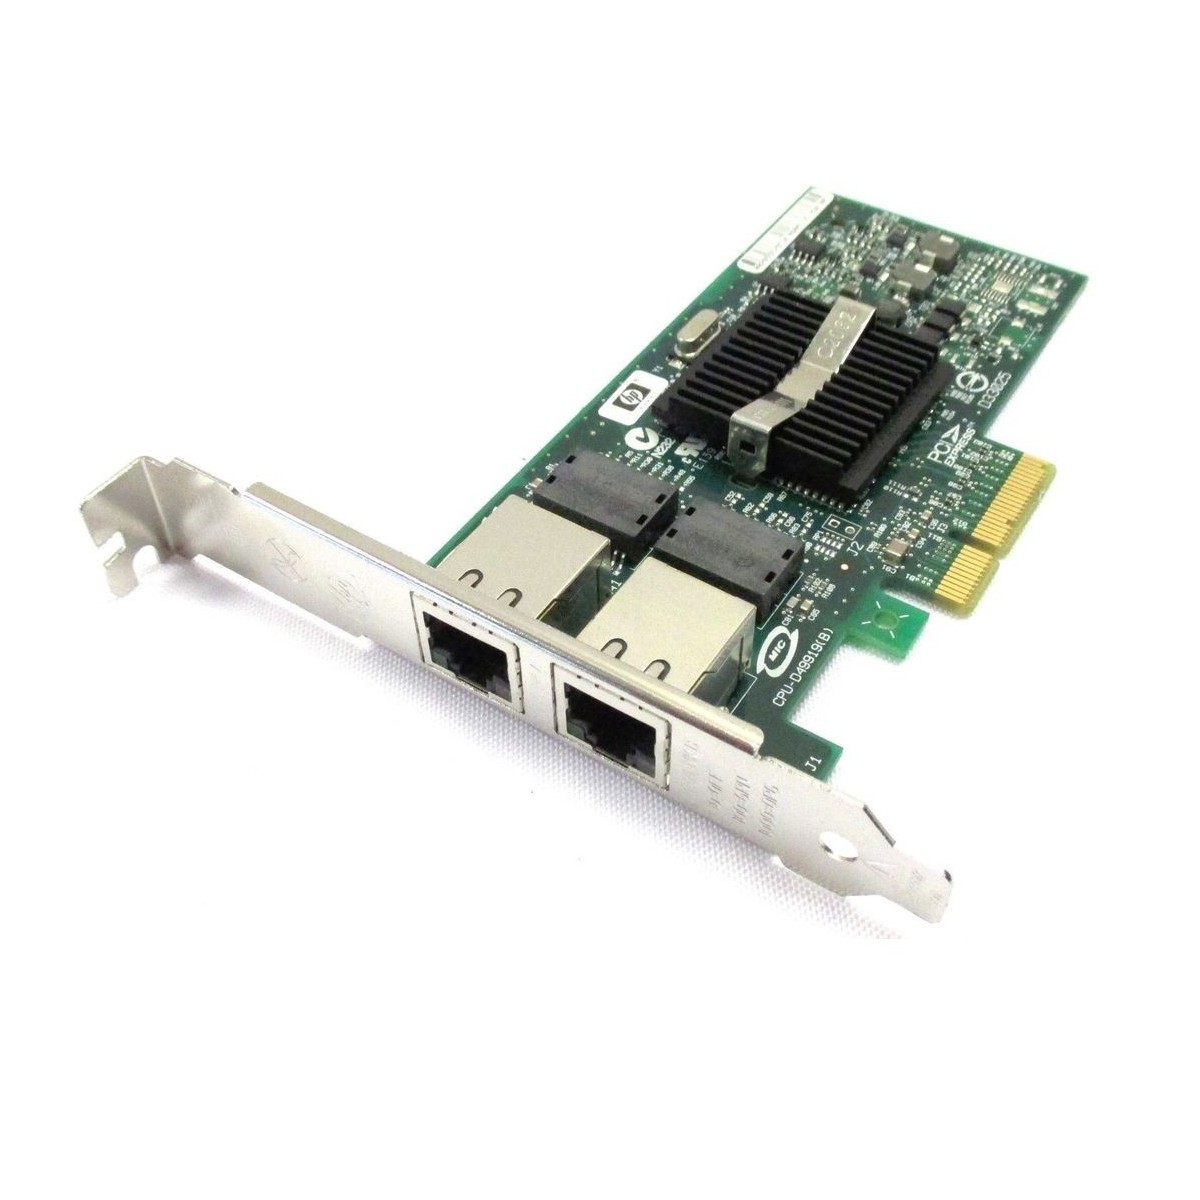 KARTA SIECIOWA 2x1GBit HP NC360T PCI-E FULL 412646-001